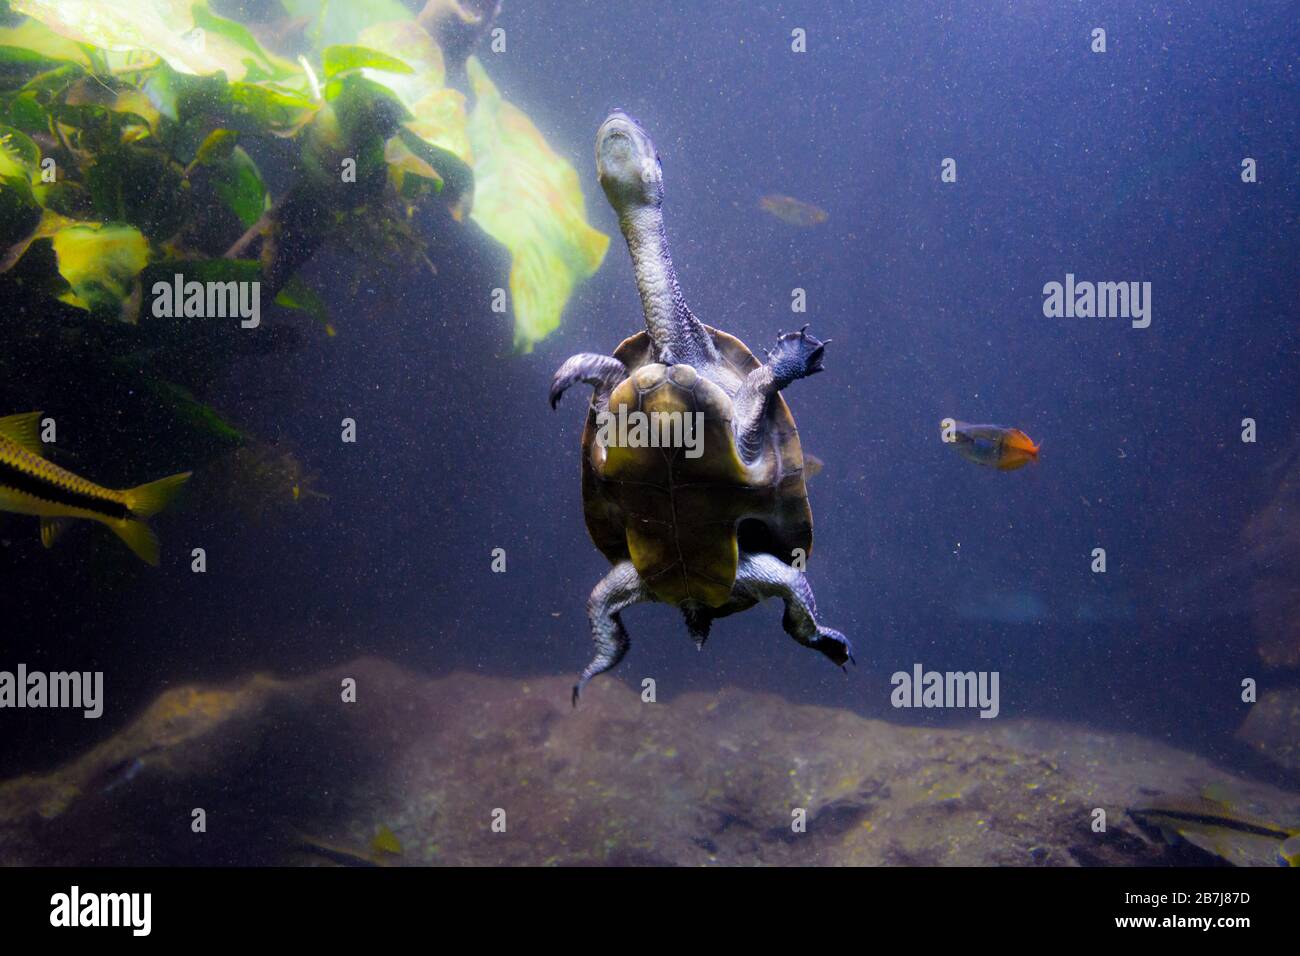 Freshwater aquarium turtle, chrysemis, trachemis and more species in aquarium Stock Photo